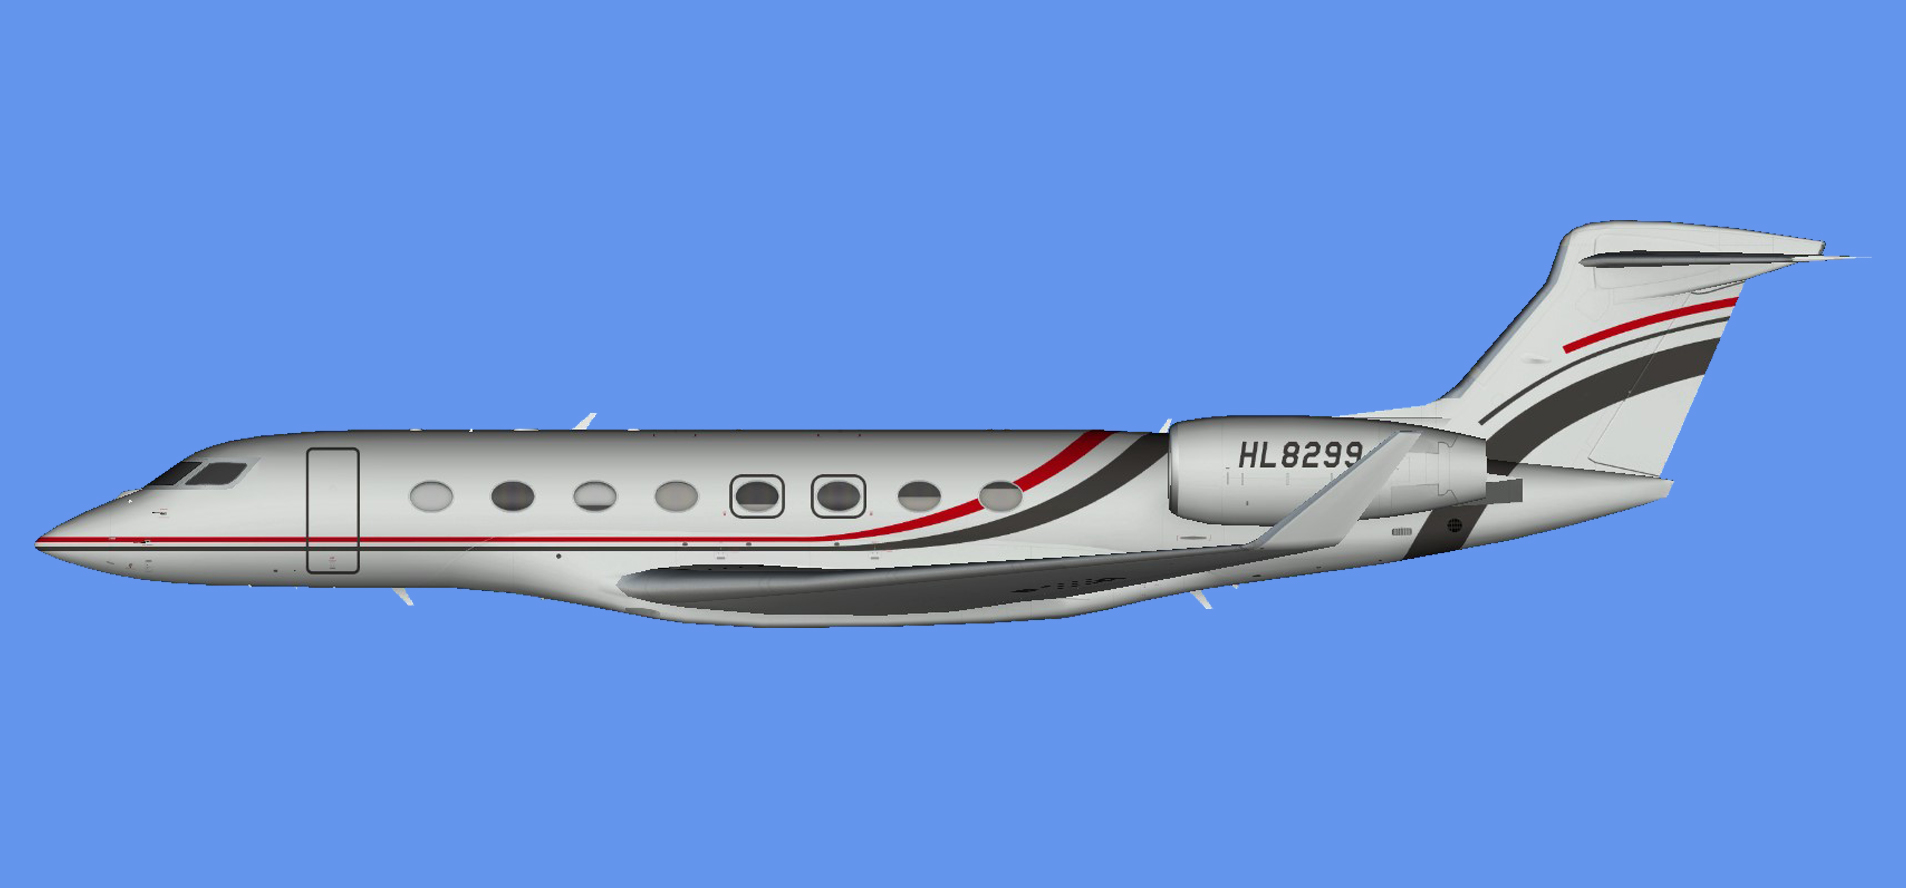 Gulfstream G650 HL8299